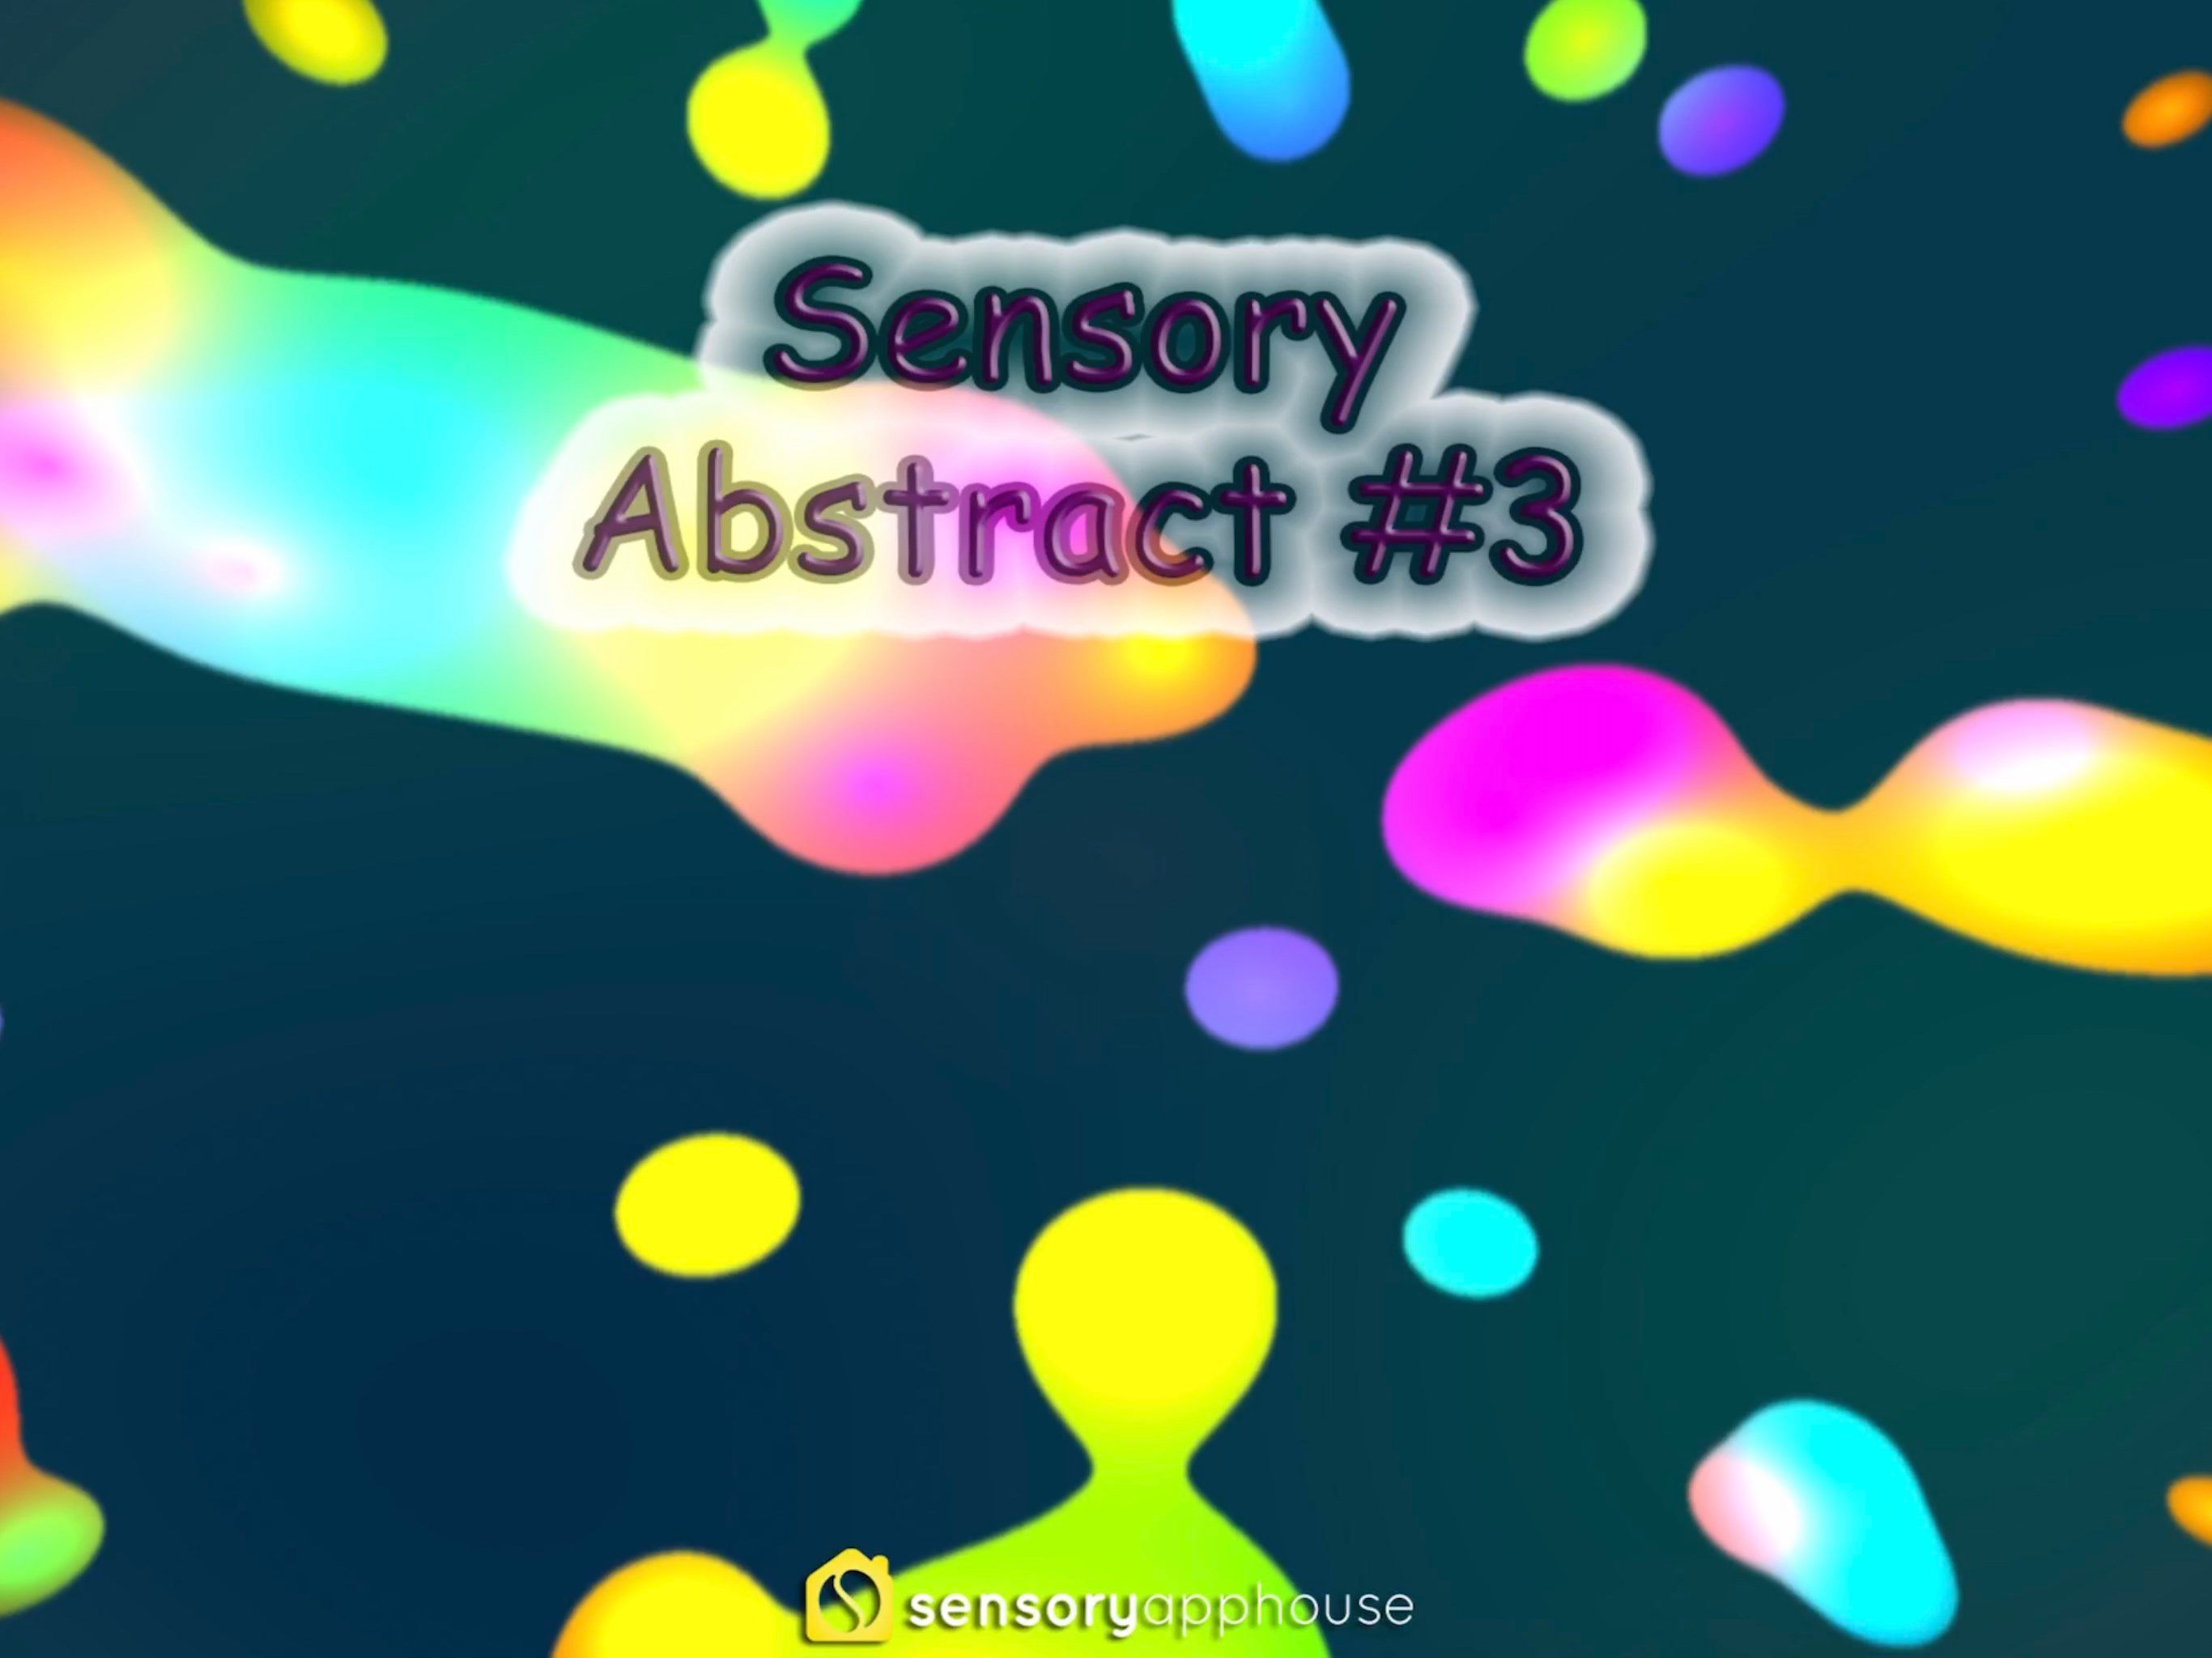 Sensory Abstract #3 visuals